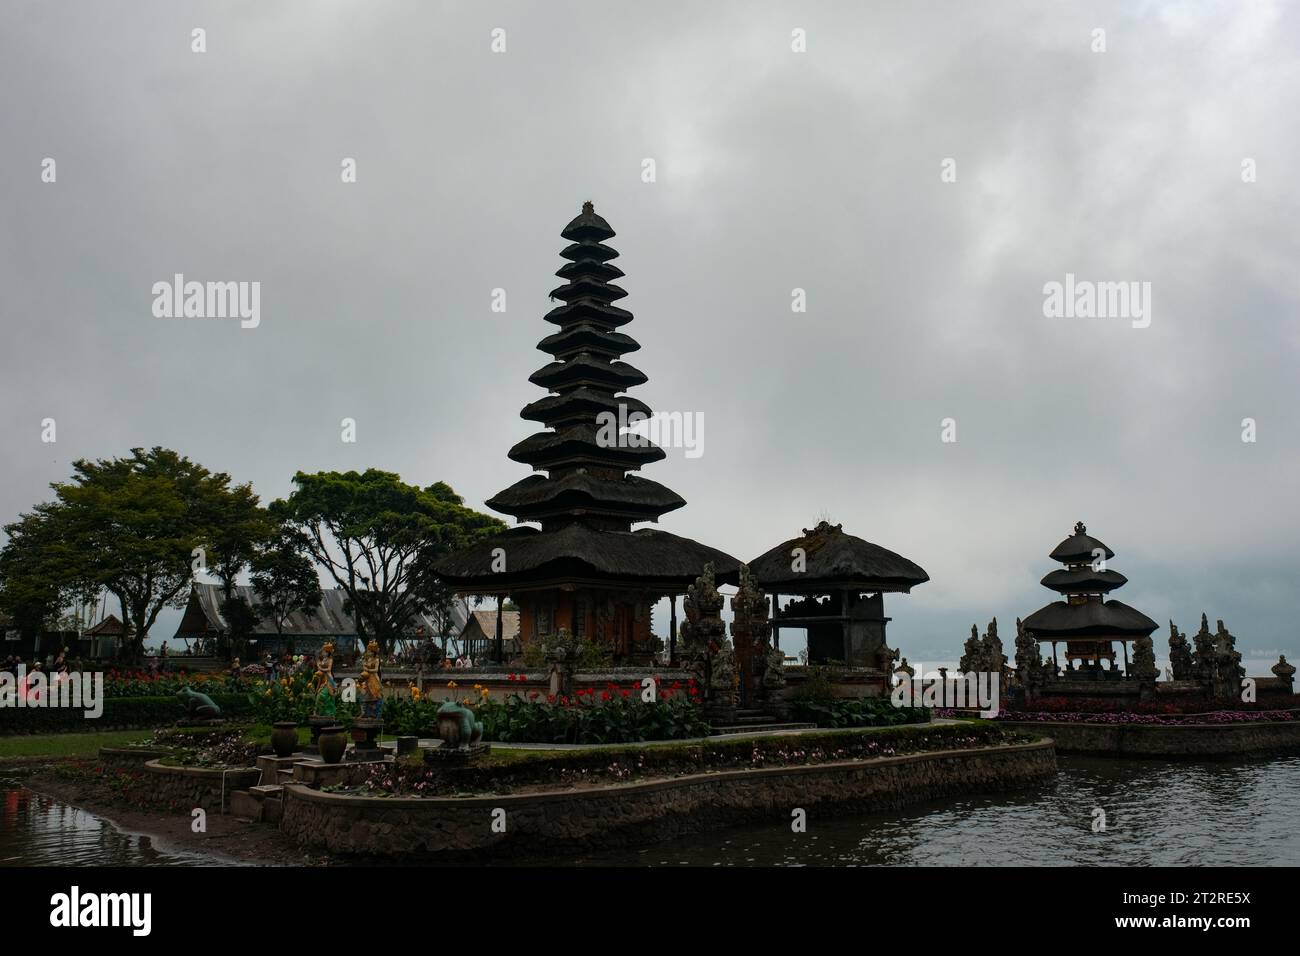 Admirez le temple emblématique d'Ulan Batur, le site le plus célèbre de Bali, sur fond de beauté sereine. Ce sanctuaire sacré émane de la tranquillité Banque D'Images